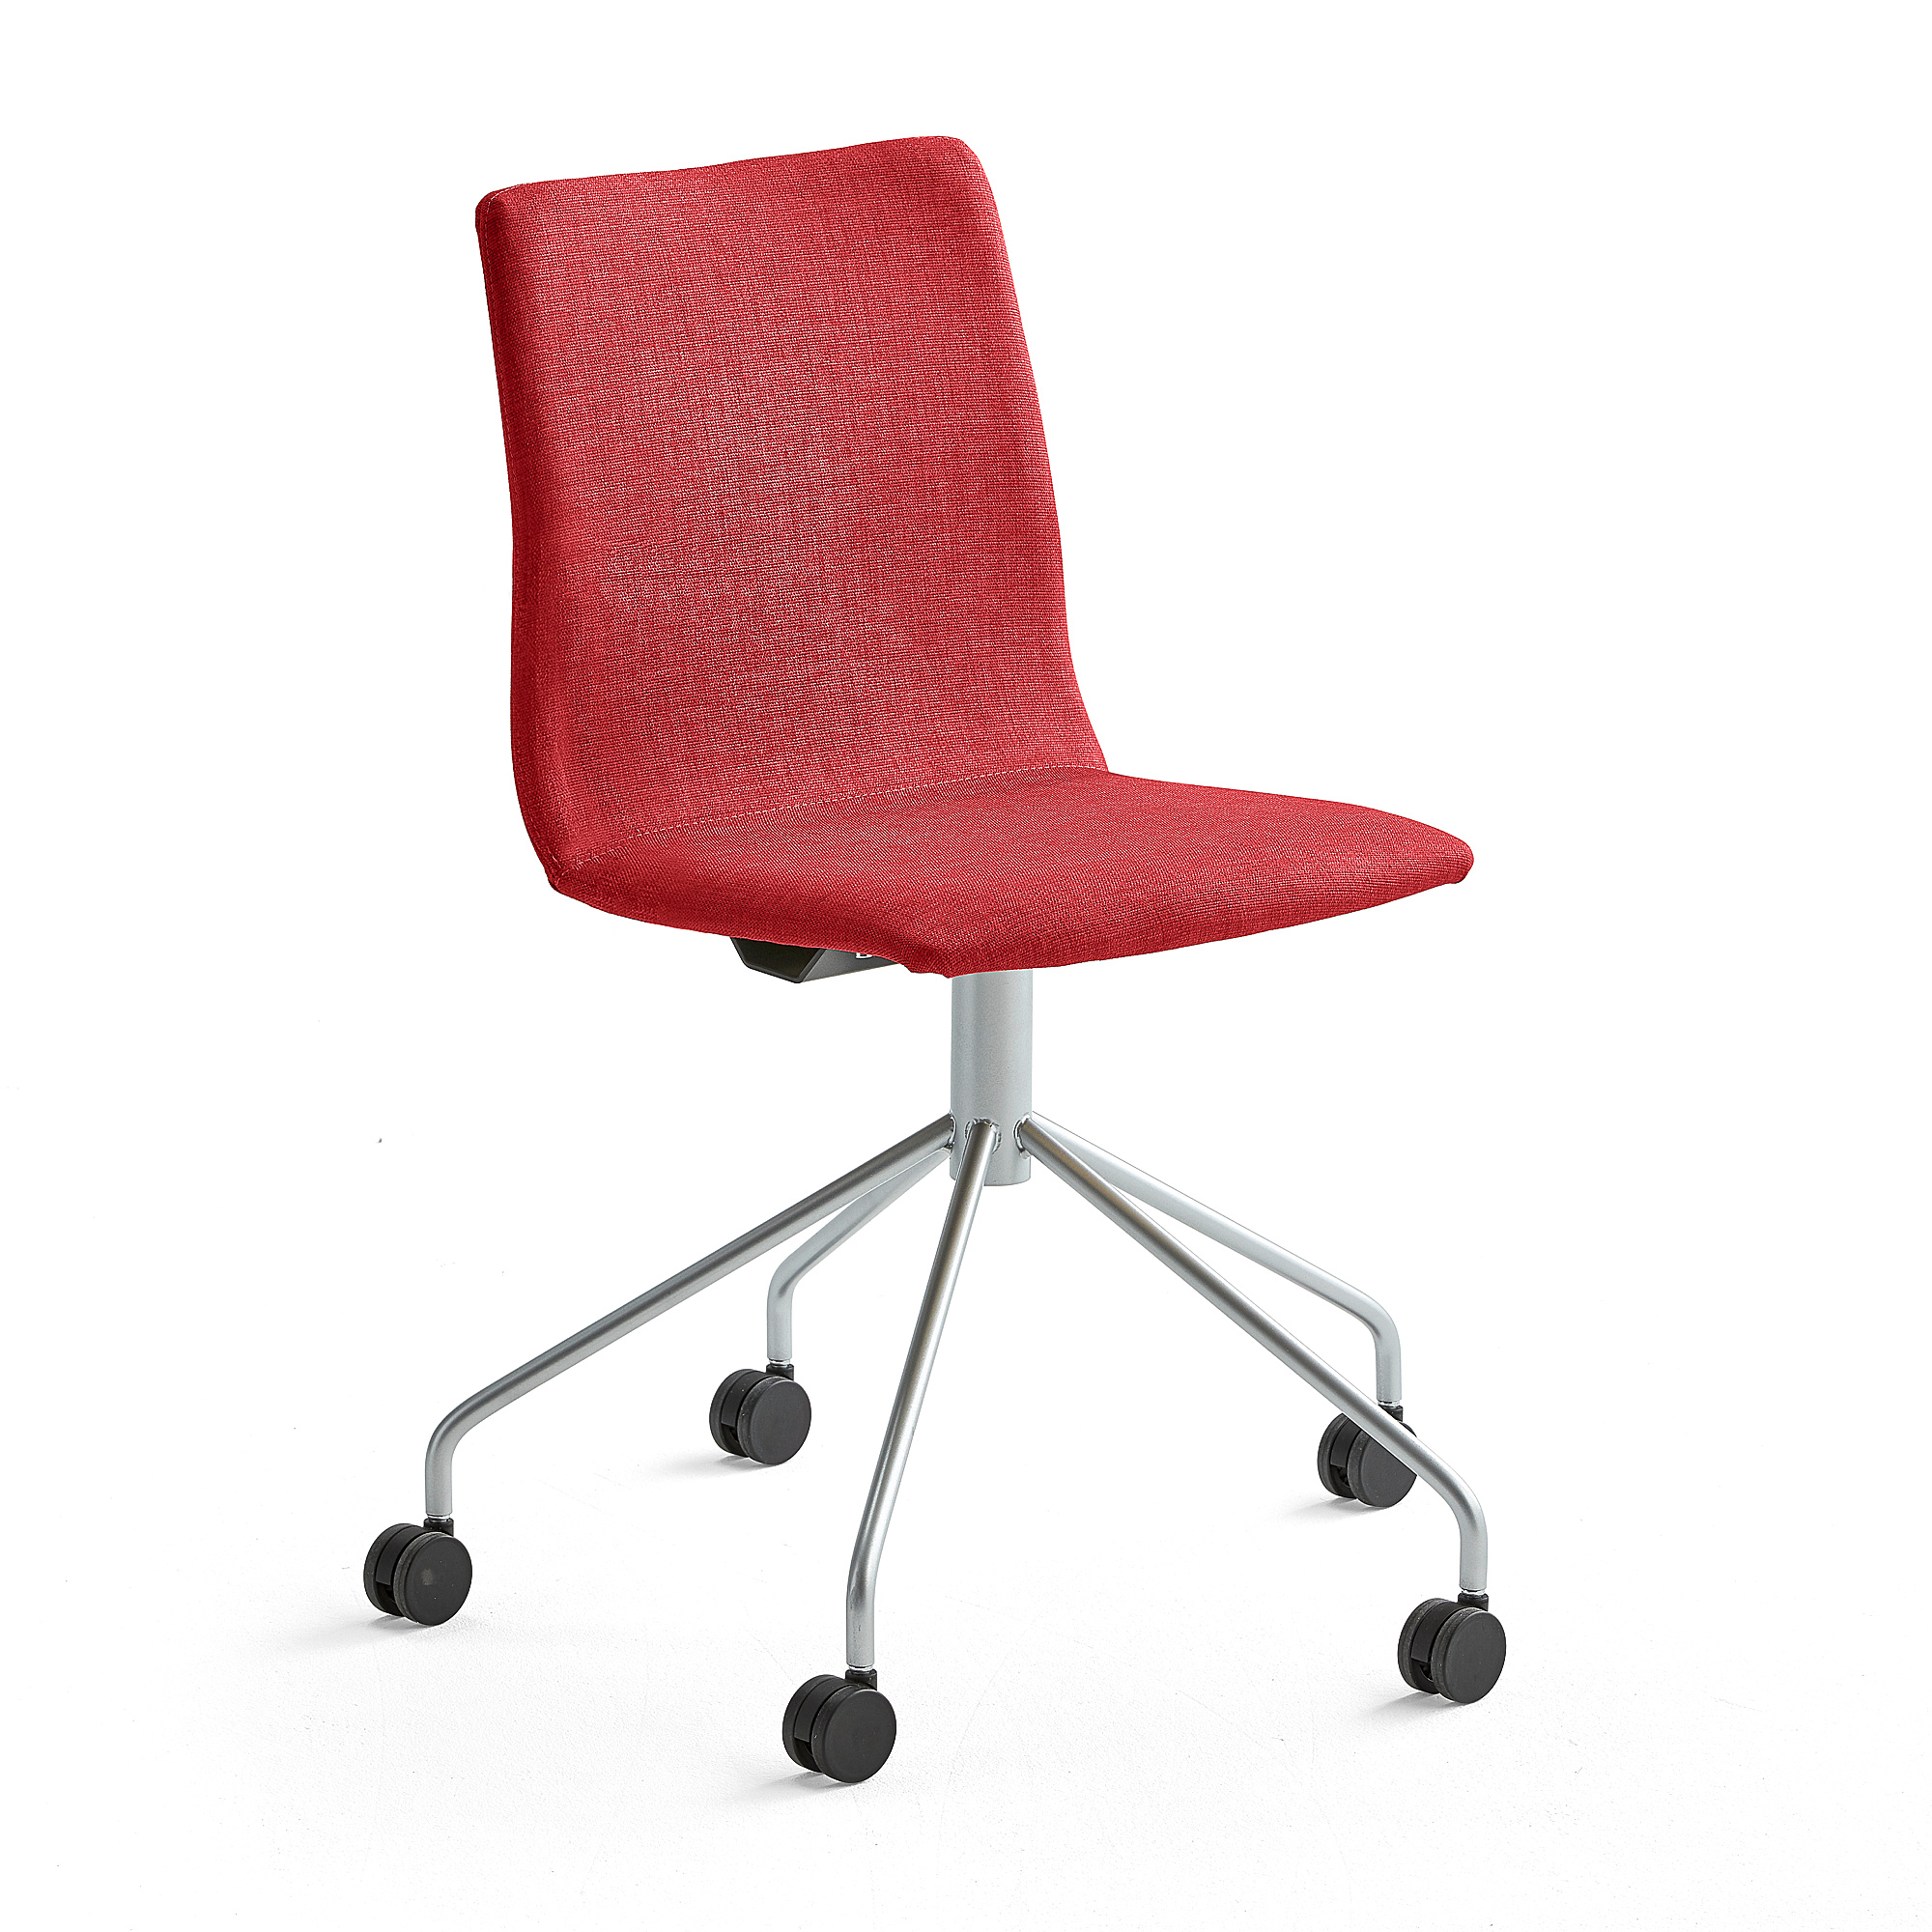 Konferenčná stolička OTTAWA, s kolieskami, červená, šedá